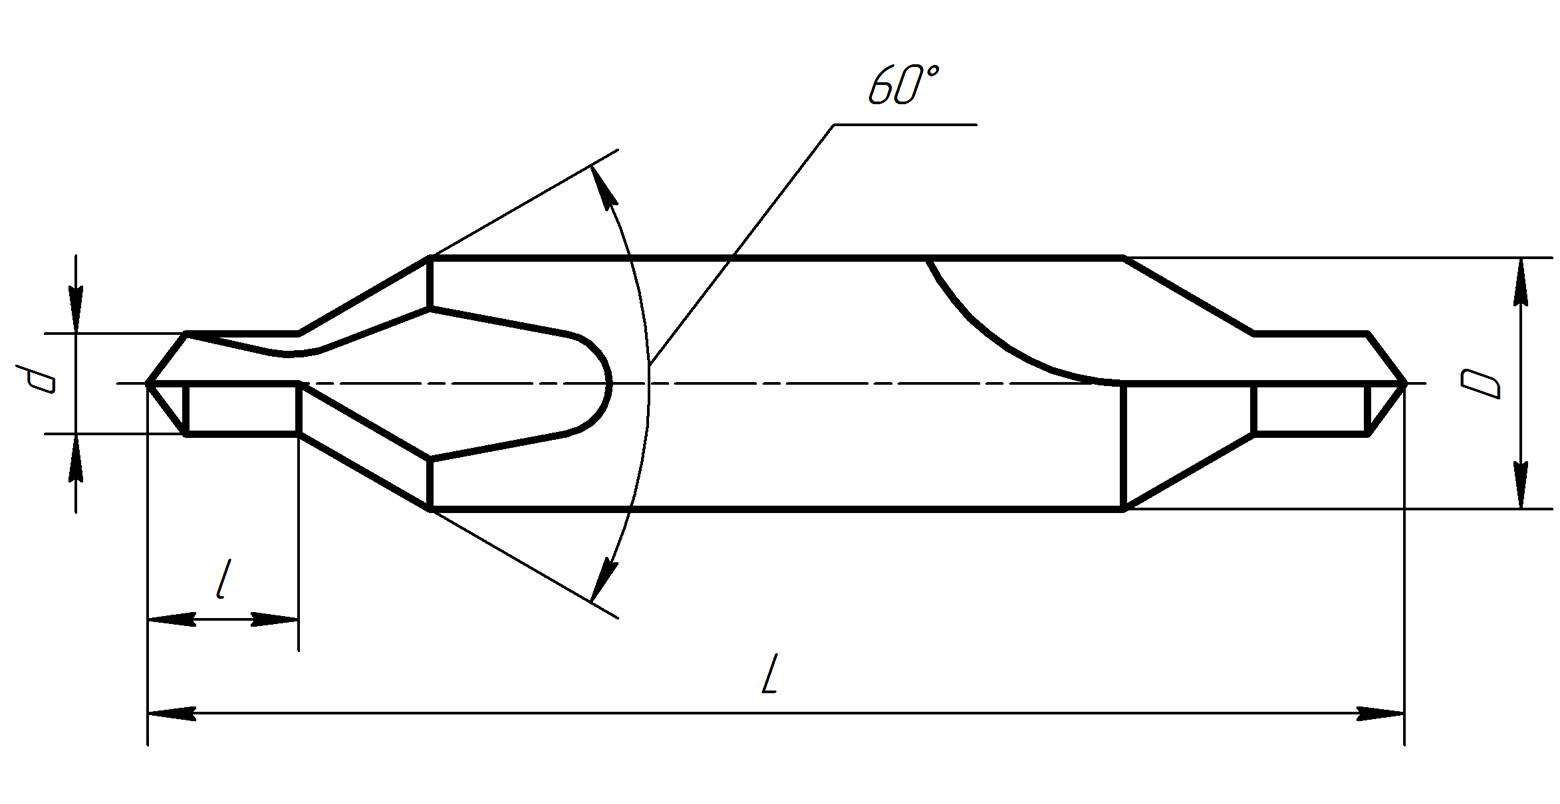 Гост 14952-75 сверла центровочные комбинированные. технические условия